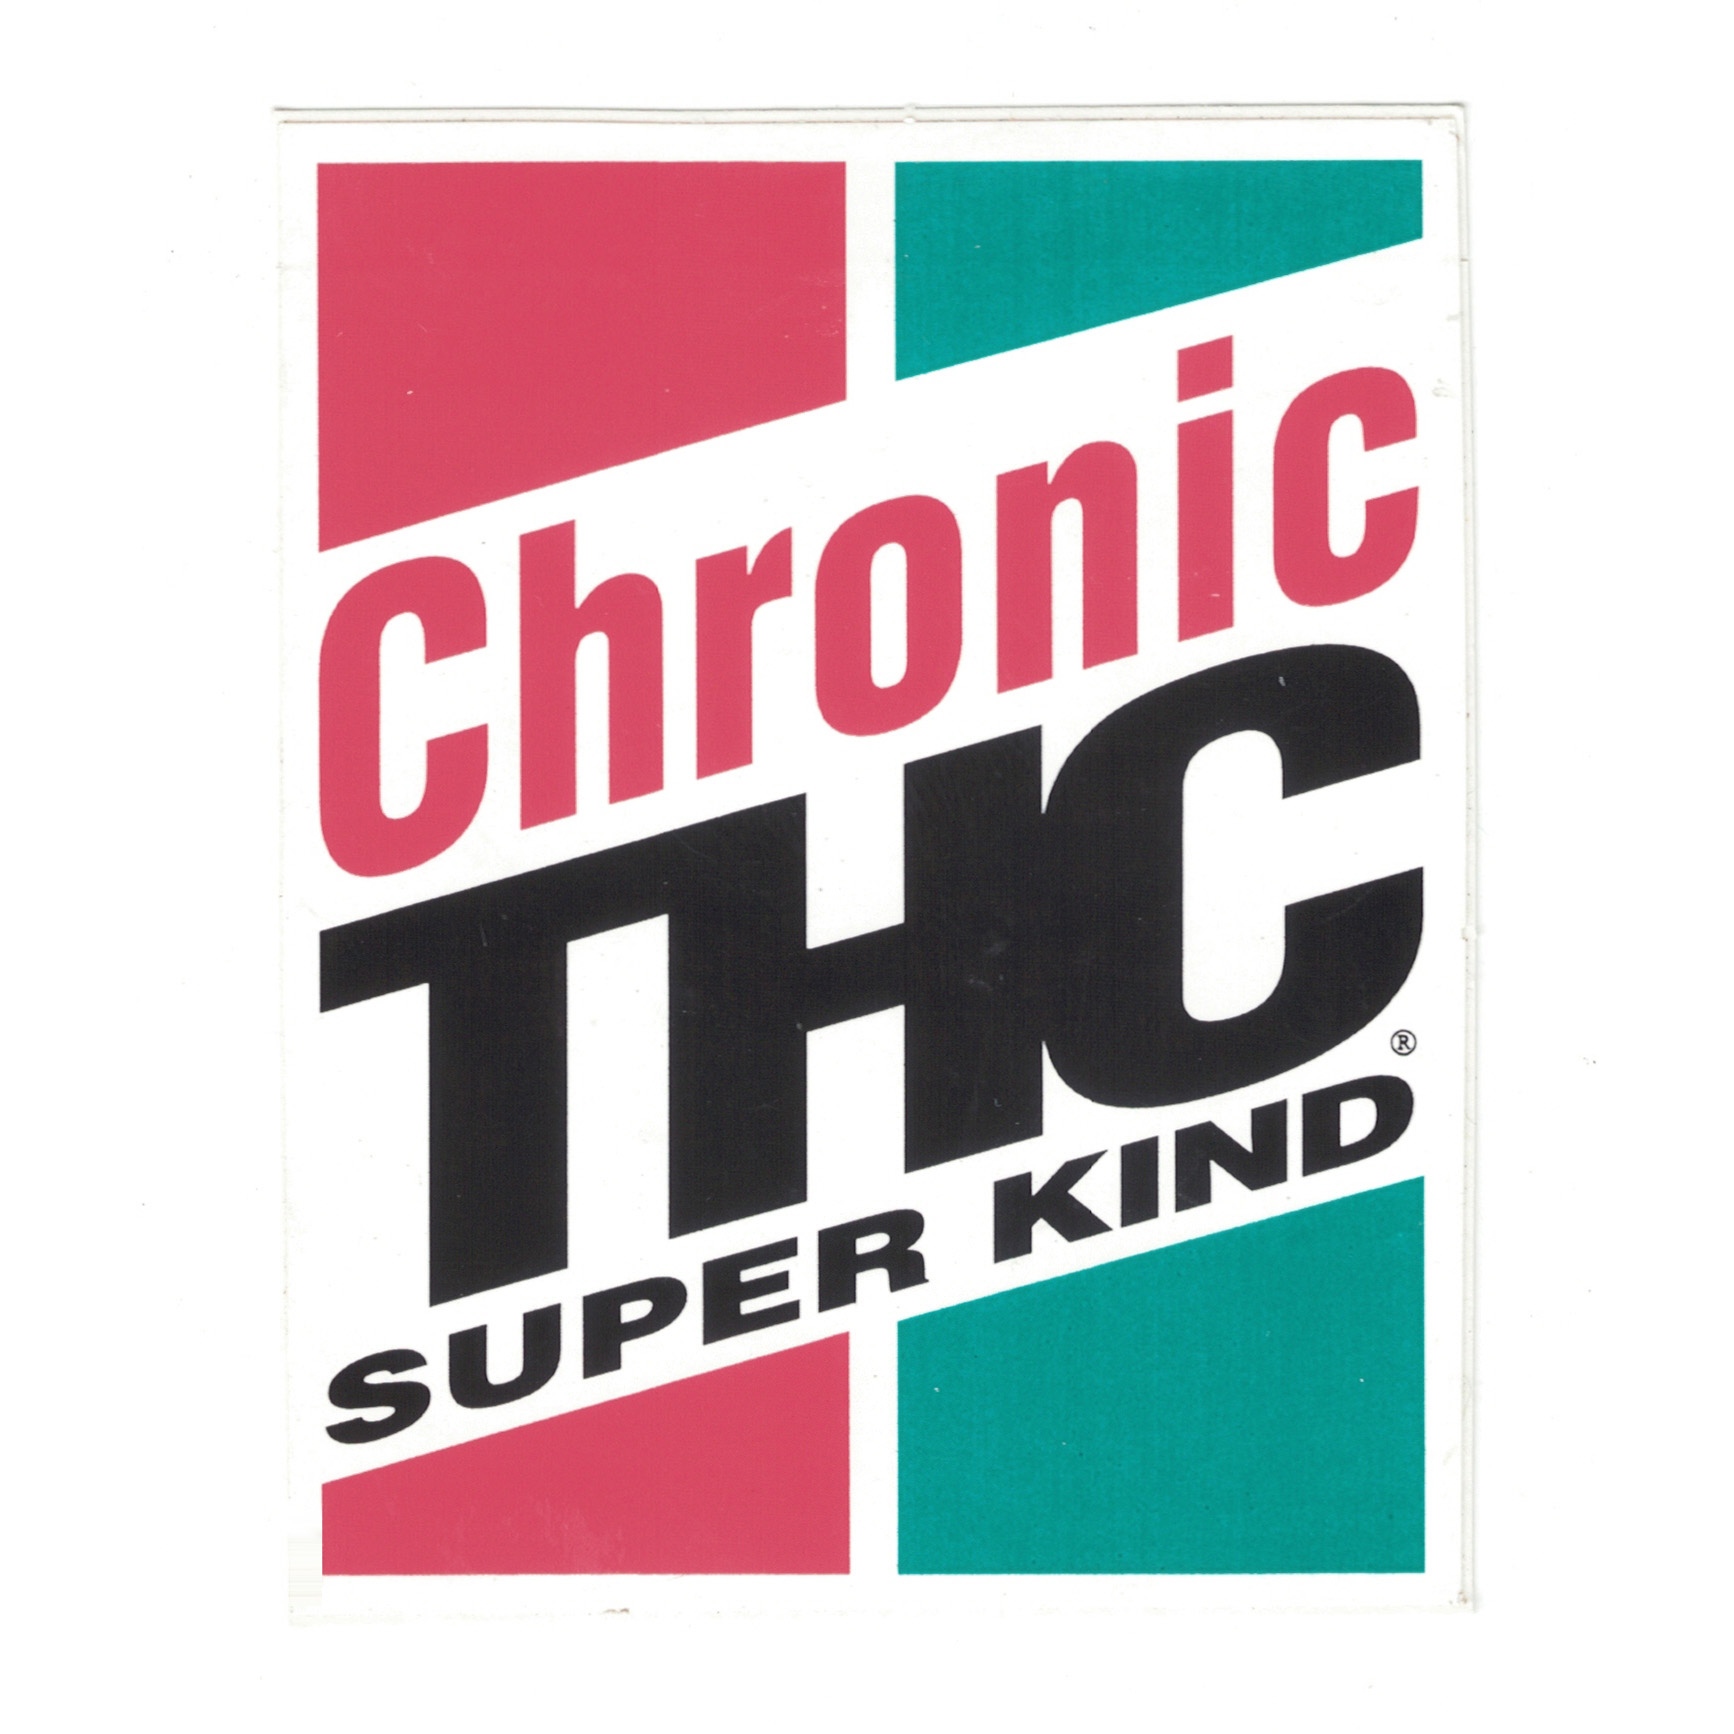 THC Castrol GTX Chronic Super Kind